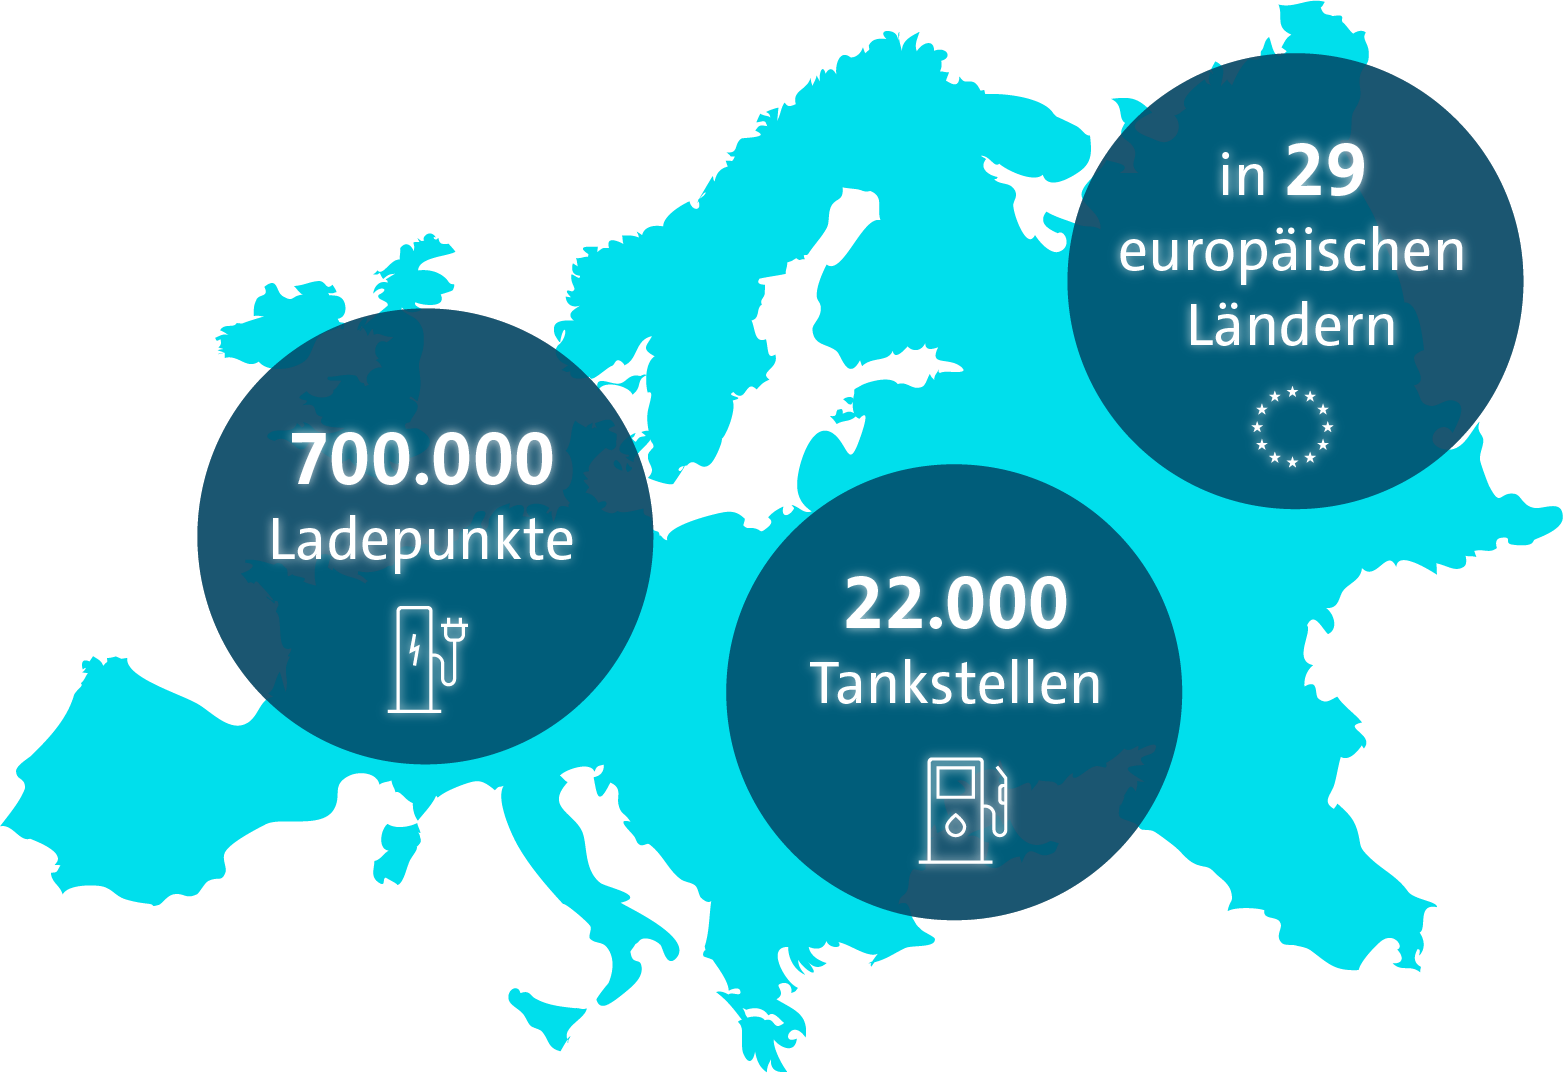 Ladepunkte und Tankstellen in Europa